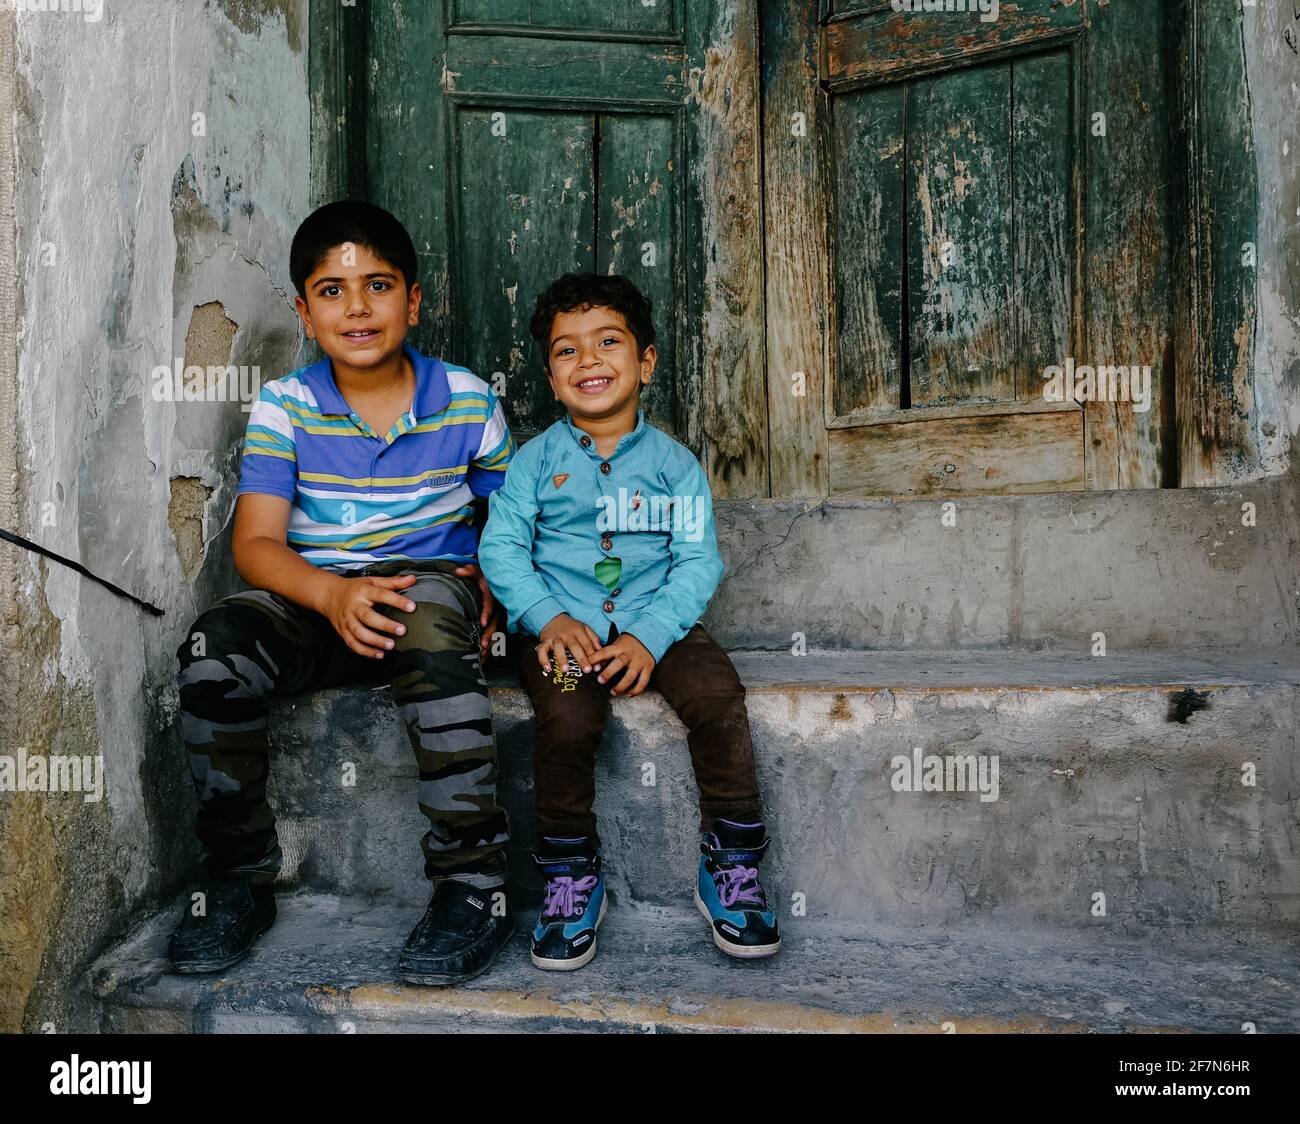 bagdad, Irak - 8 avril 2017 : deux enfants assis sur l'ancienne porte en bois Banque D'Images